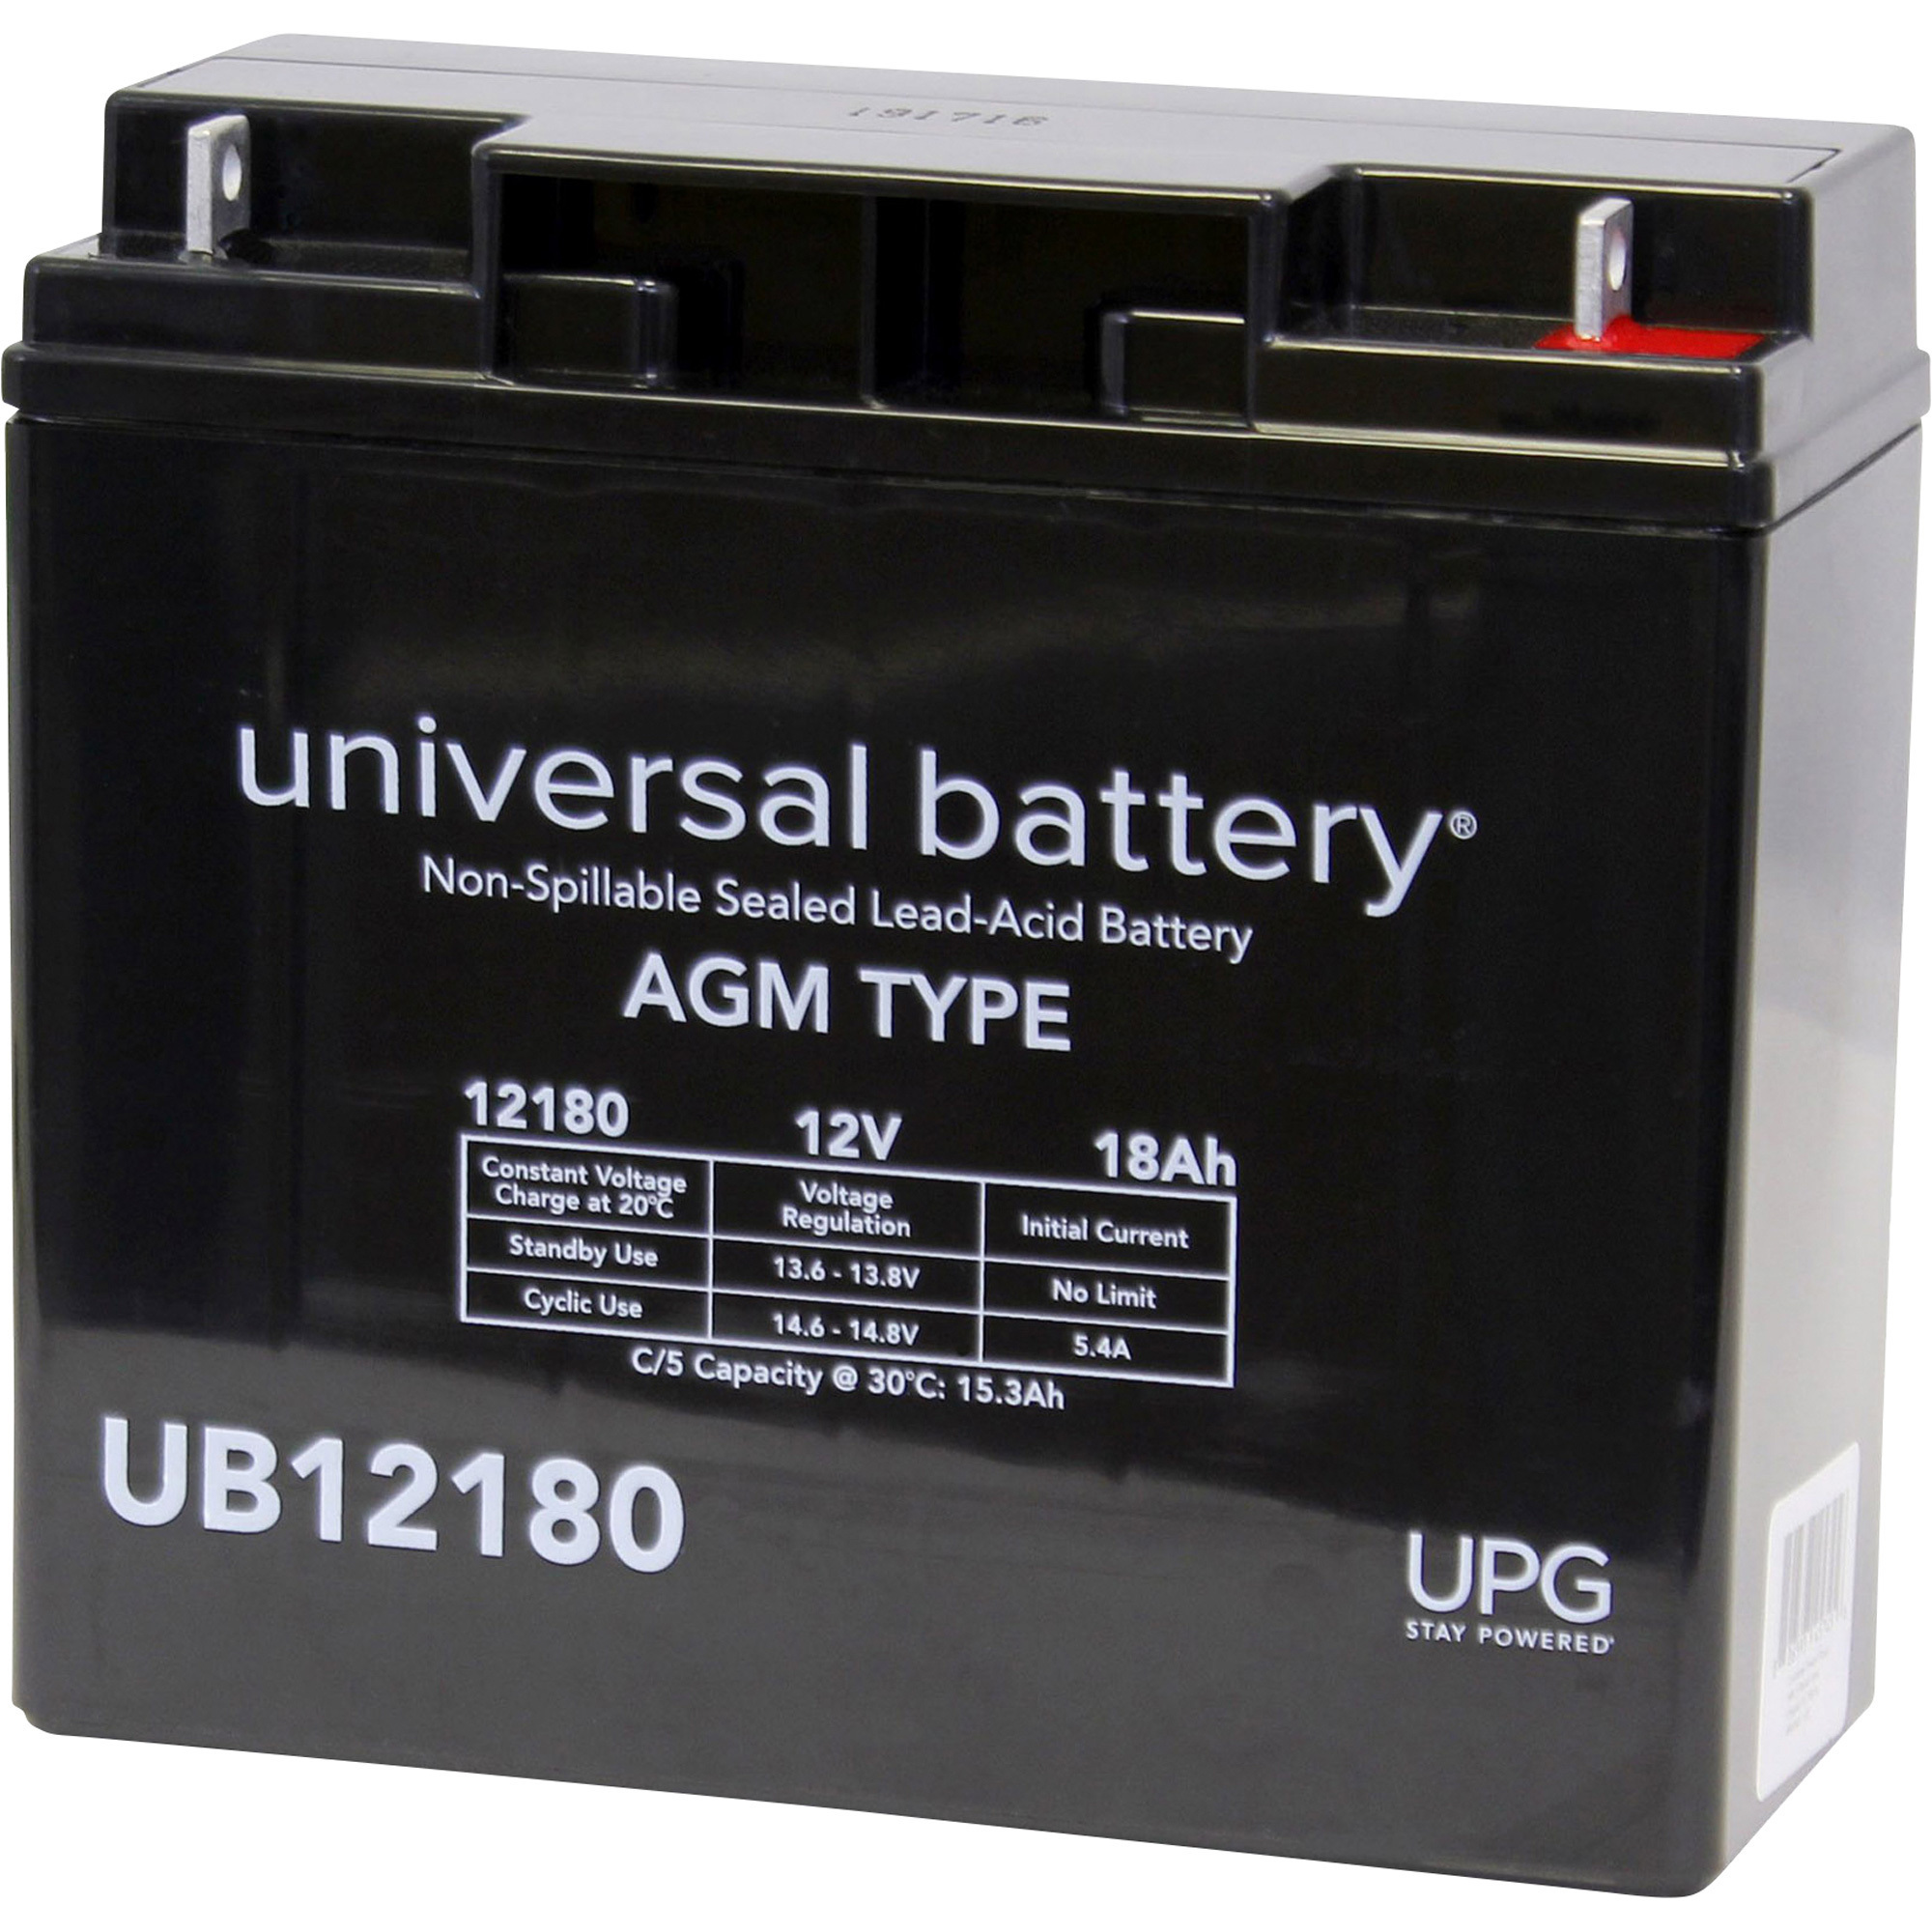 UPG Sealed Lead-Acid Battery, AGM-type, 12V, 18 Amps, Model D5745